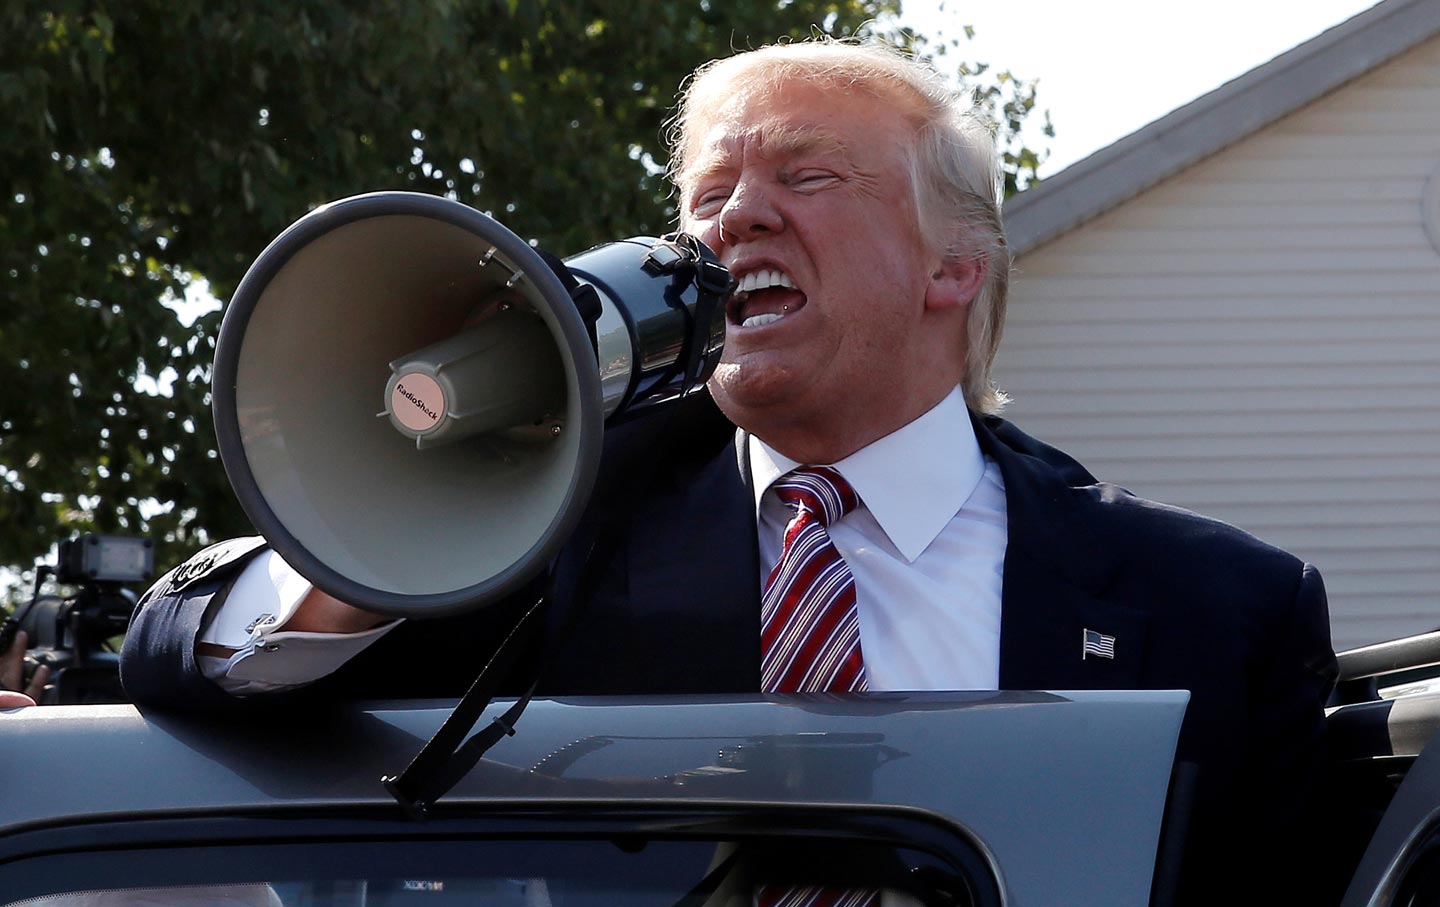 Trump with a bullhorn